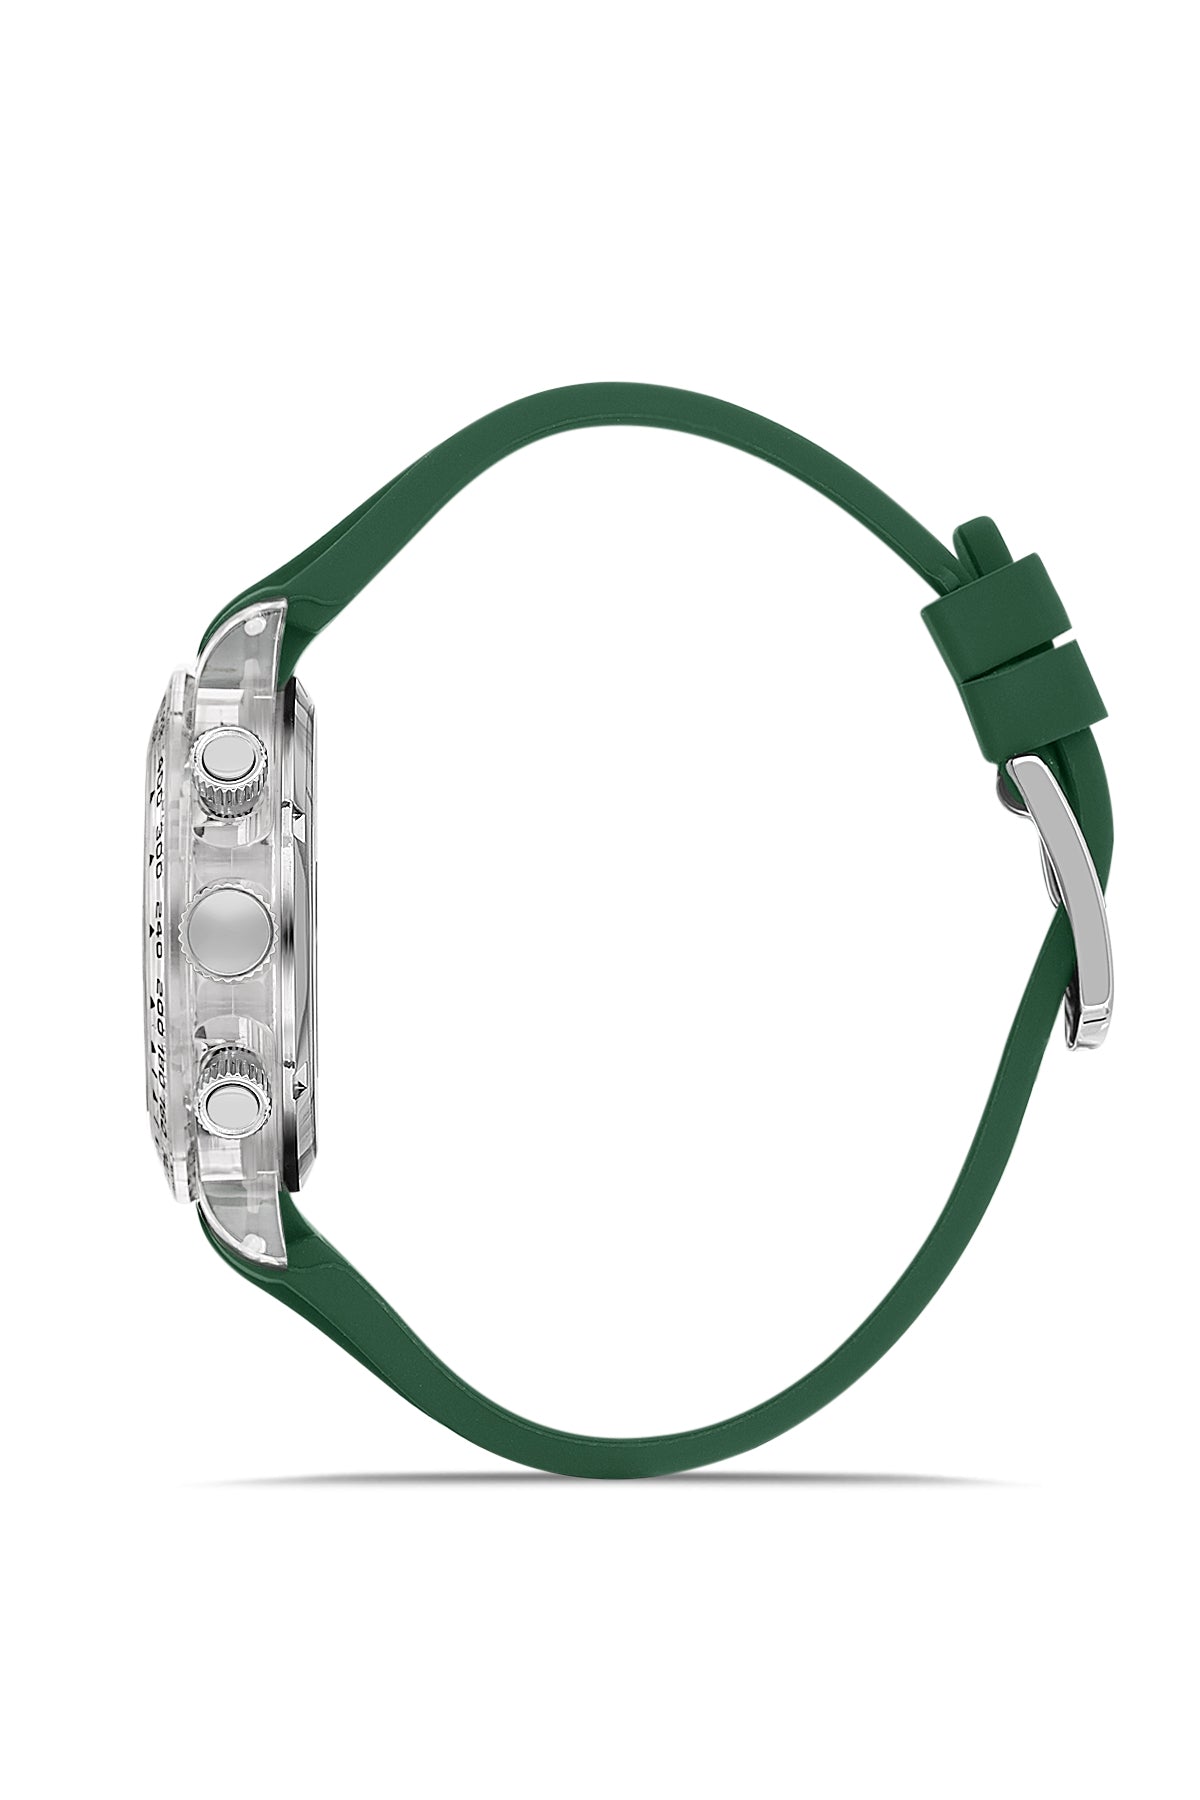 DAVID GUNER Polycarbonate Green Strap Unisex Wristwatch